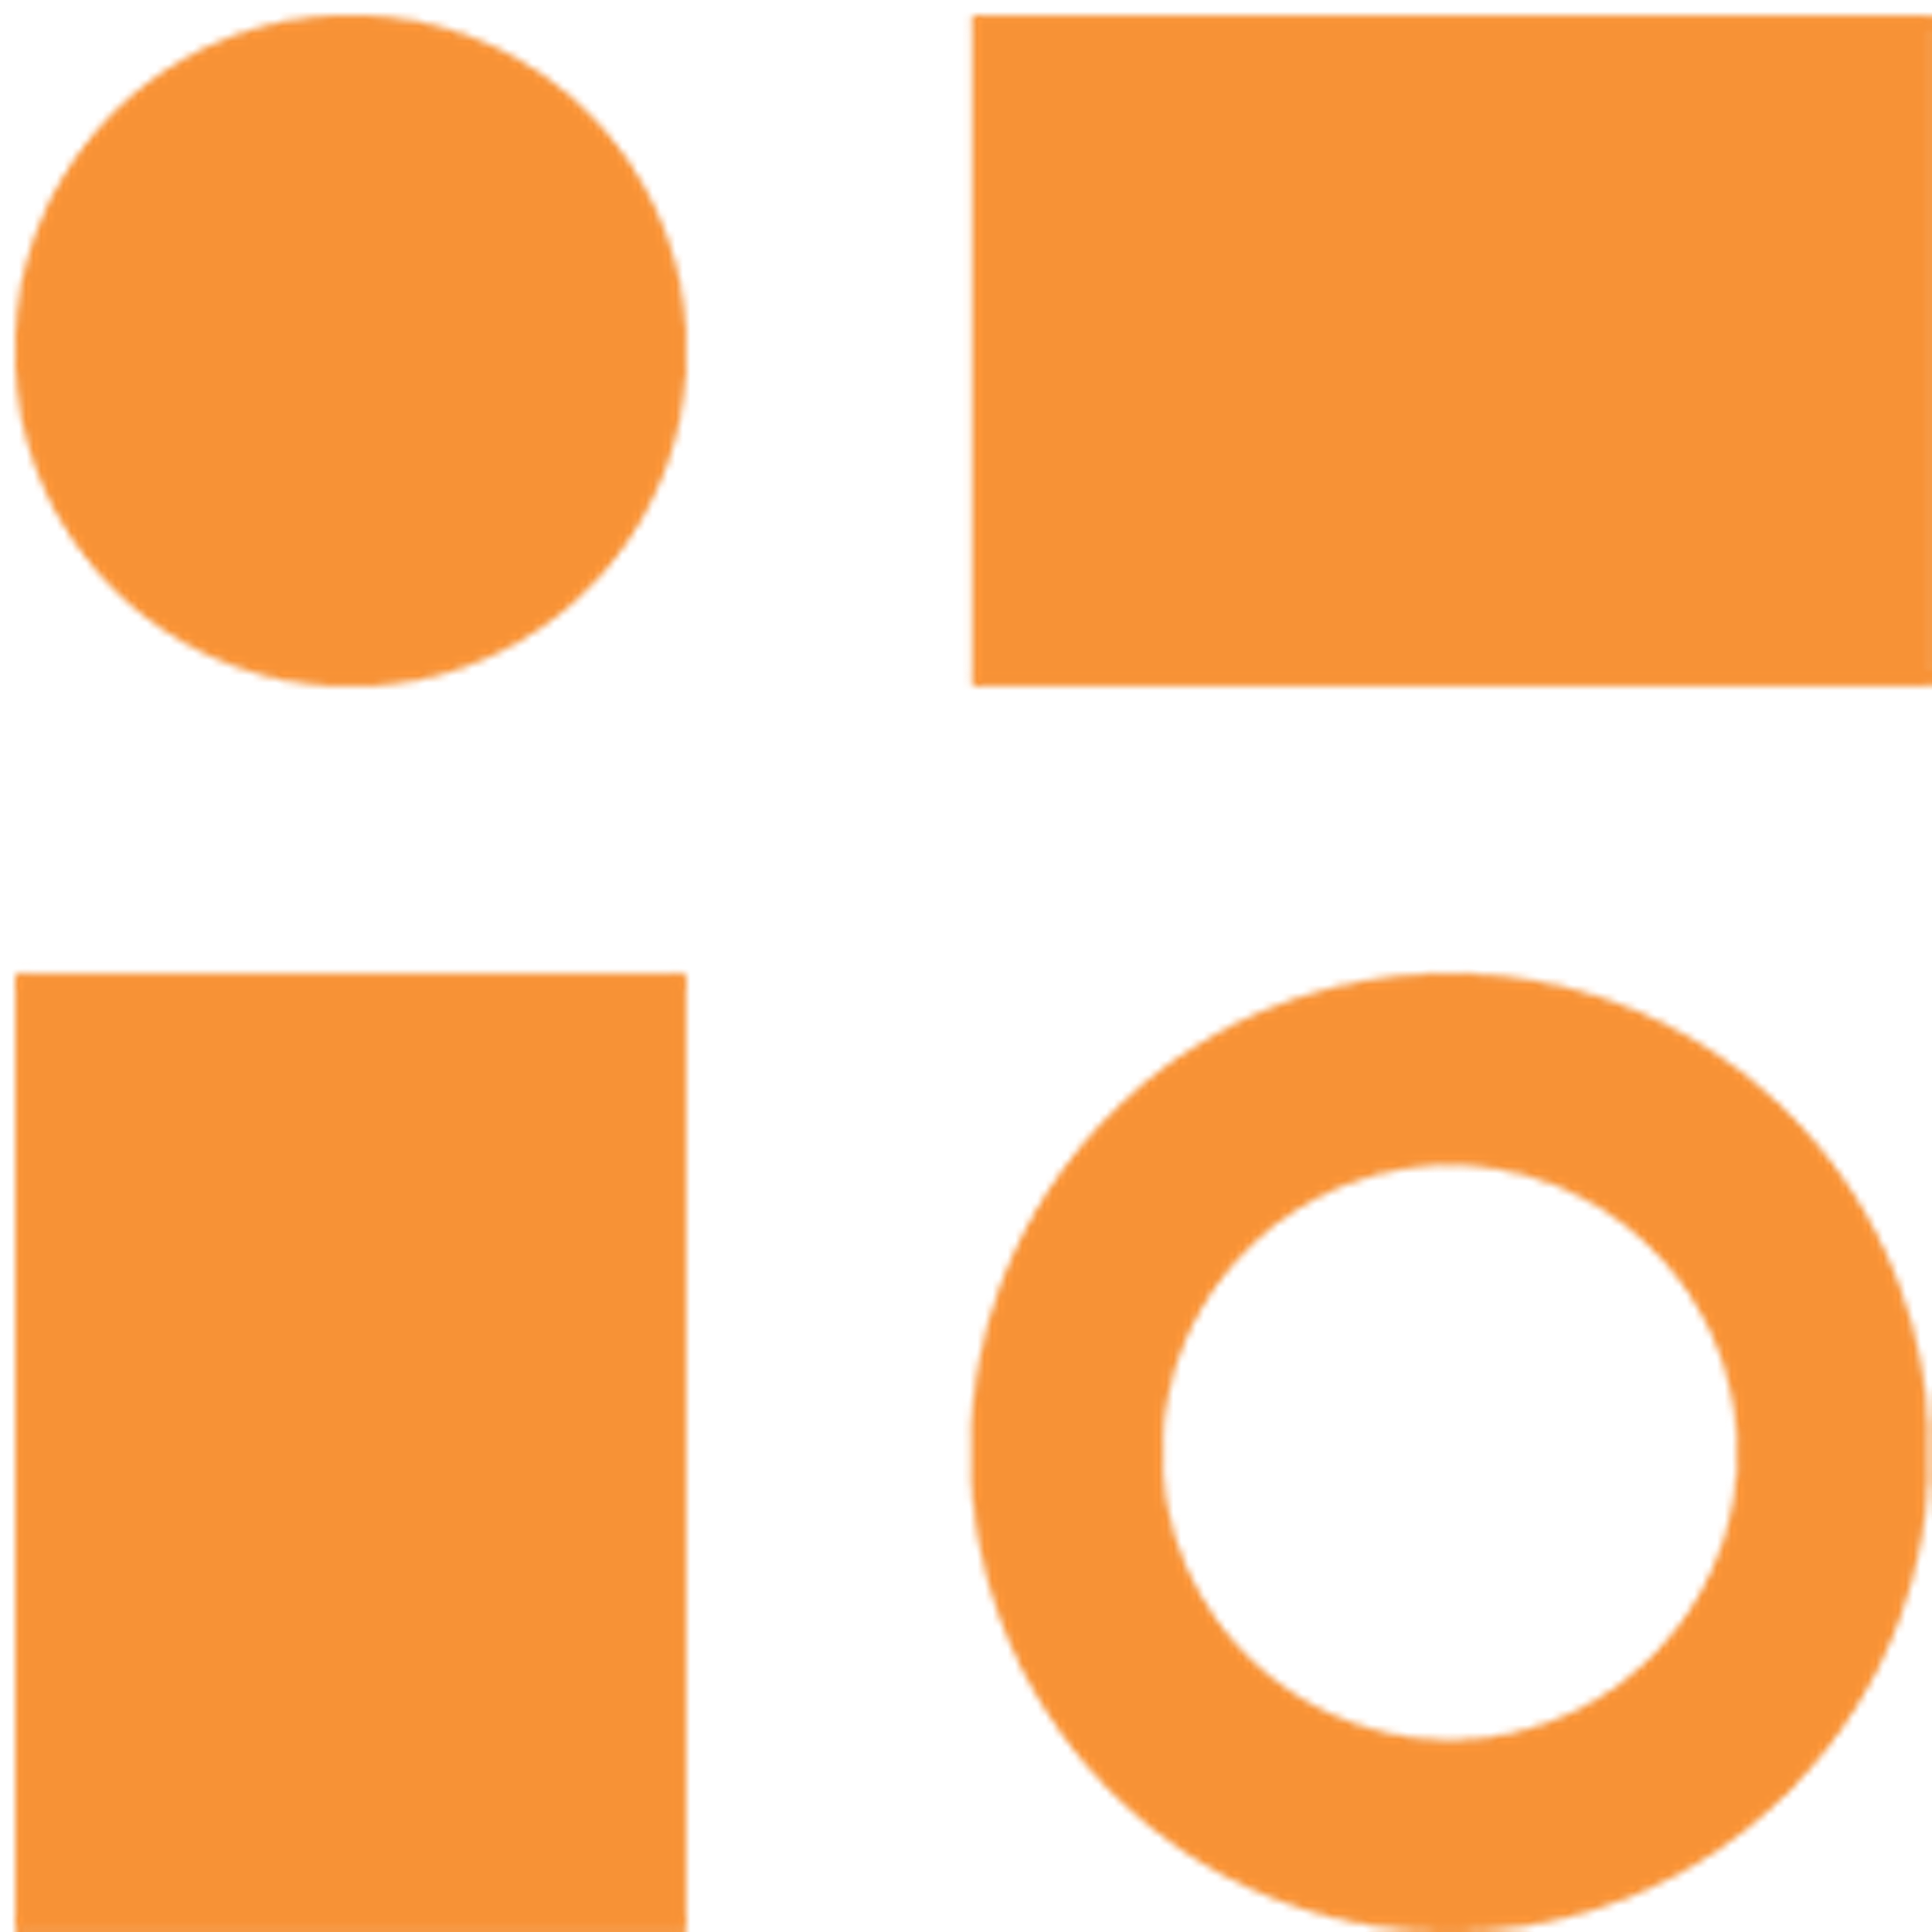 Tazio Logo